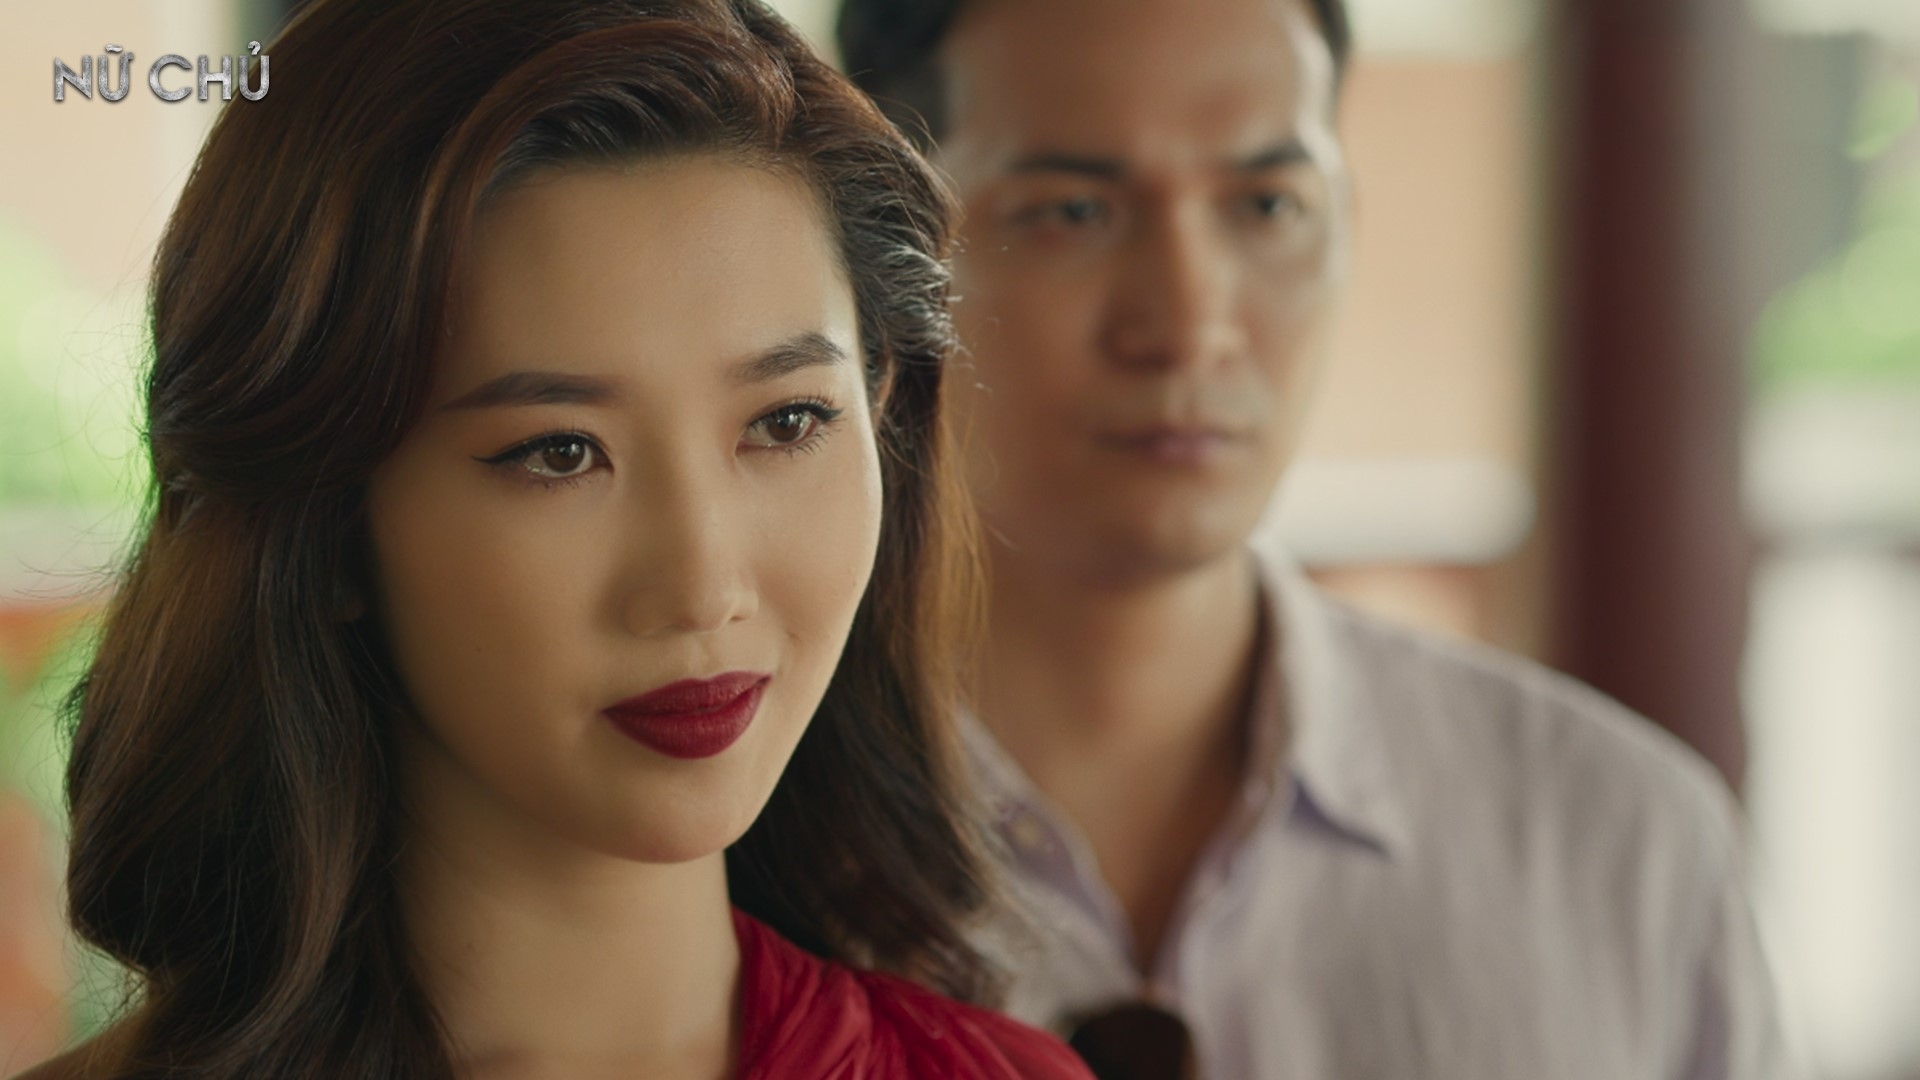 Nữ chính gây tranh cãi nhất phim Việt hiện tại: Thoại không cảm xúc, diễn xuất thua xa dàn nữ phụ - Ảnh 2.